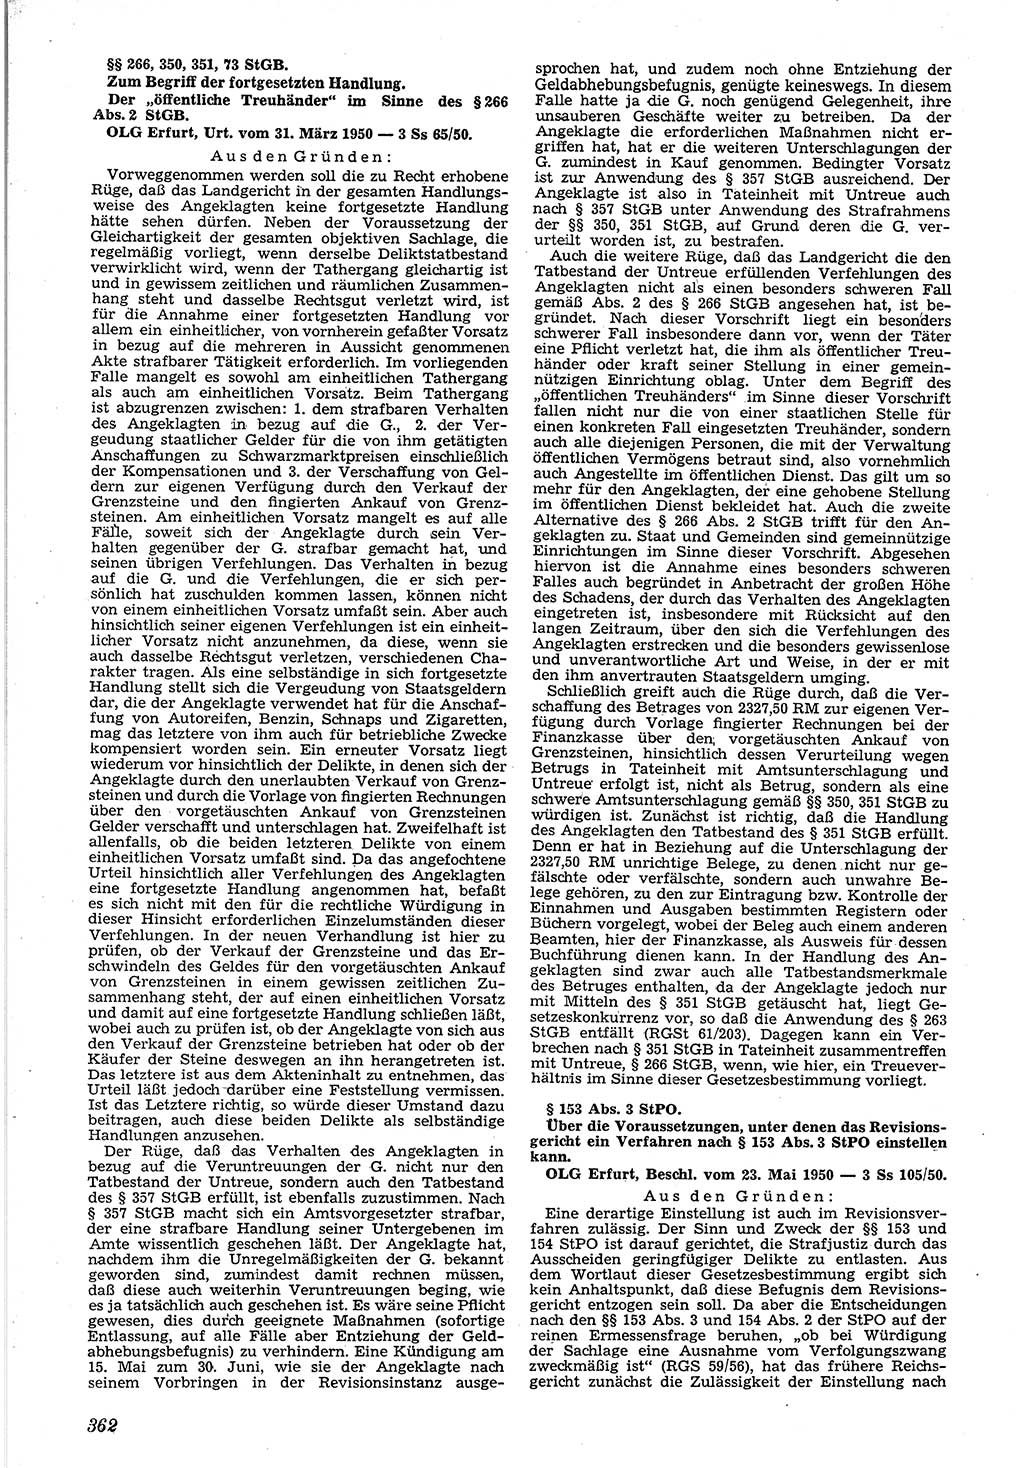 Neue Justiz (NJ), Zeitschrift für Recht und Rechtswissenschaft [Deutsche Demokratische Republik (DDR)], 4. Jahrgang 1950, Seite 362 (NJ DDR 1950, S. 362)